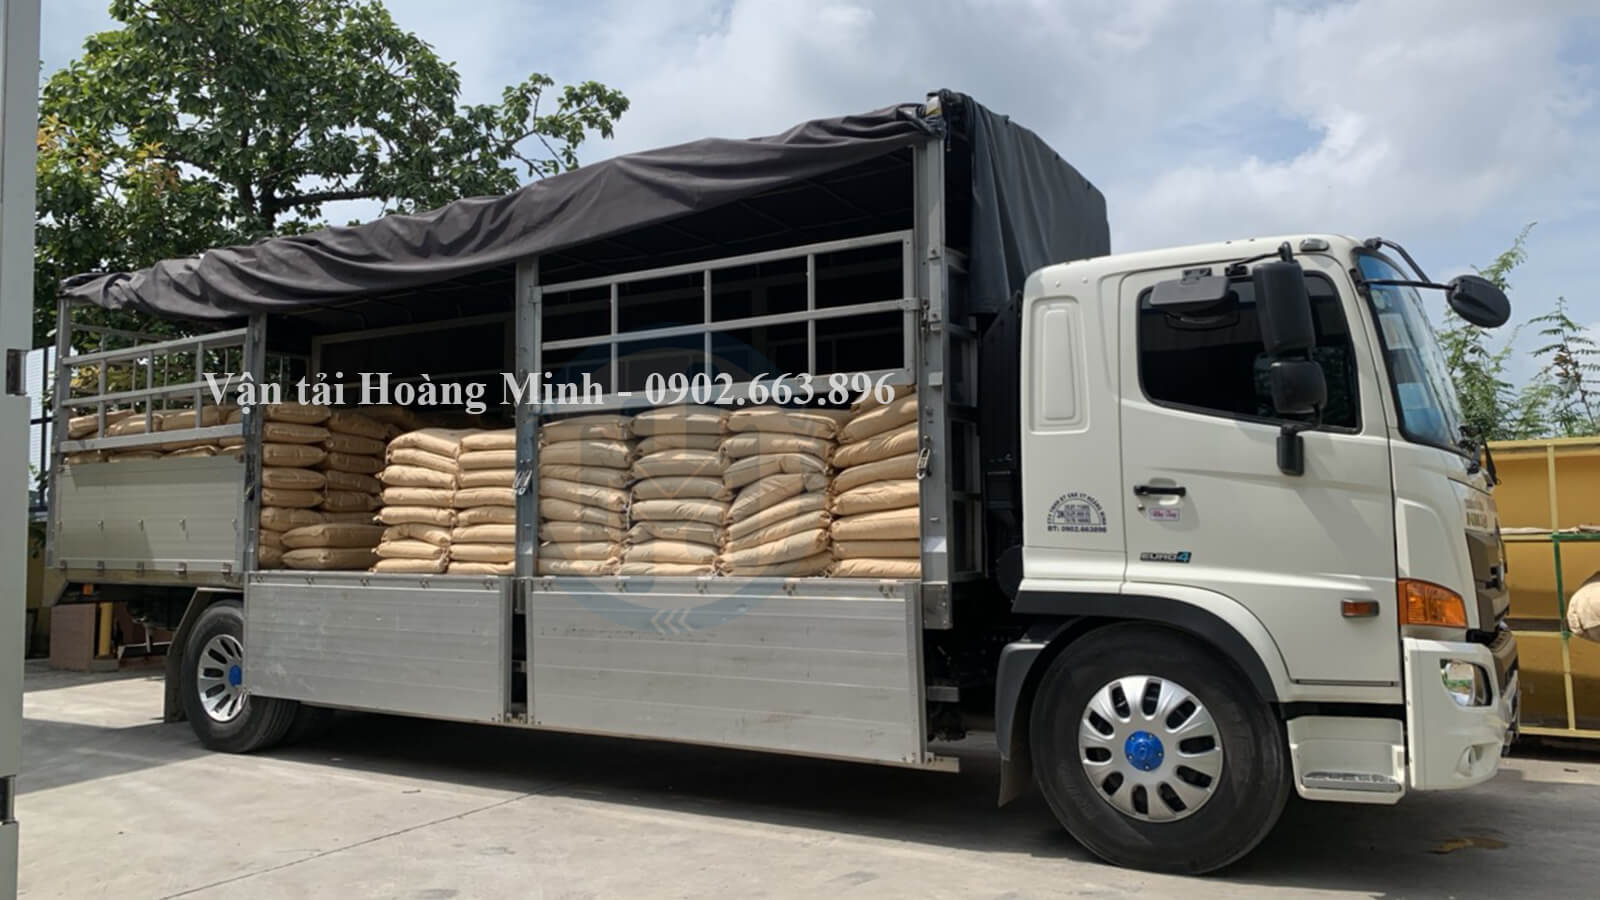 Hình ảnh xe tải Hoàng Minh vận chuyển bao hạt nhựa cho khách đi An Giang.jpg